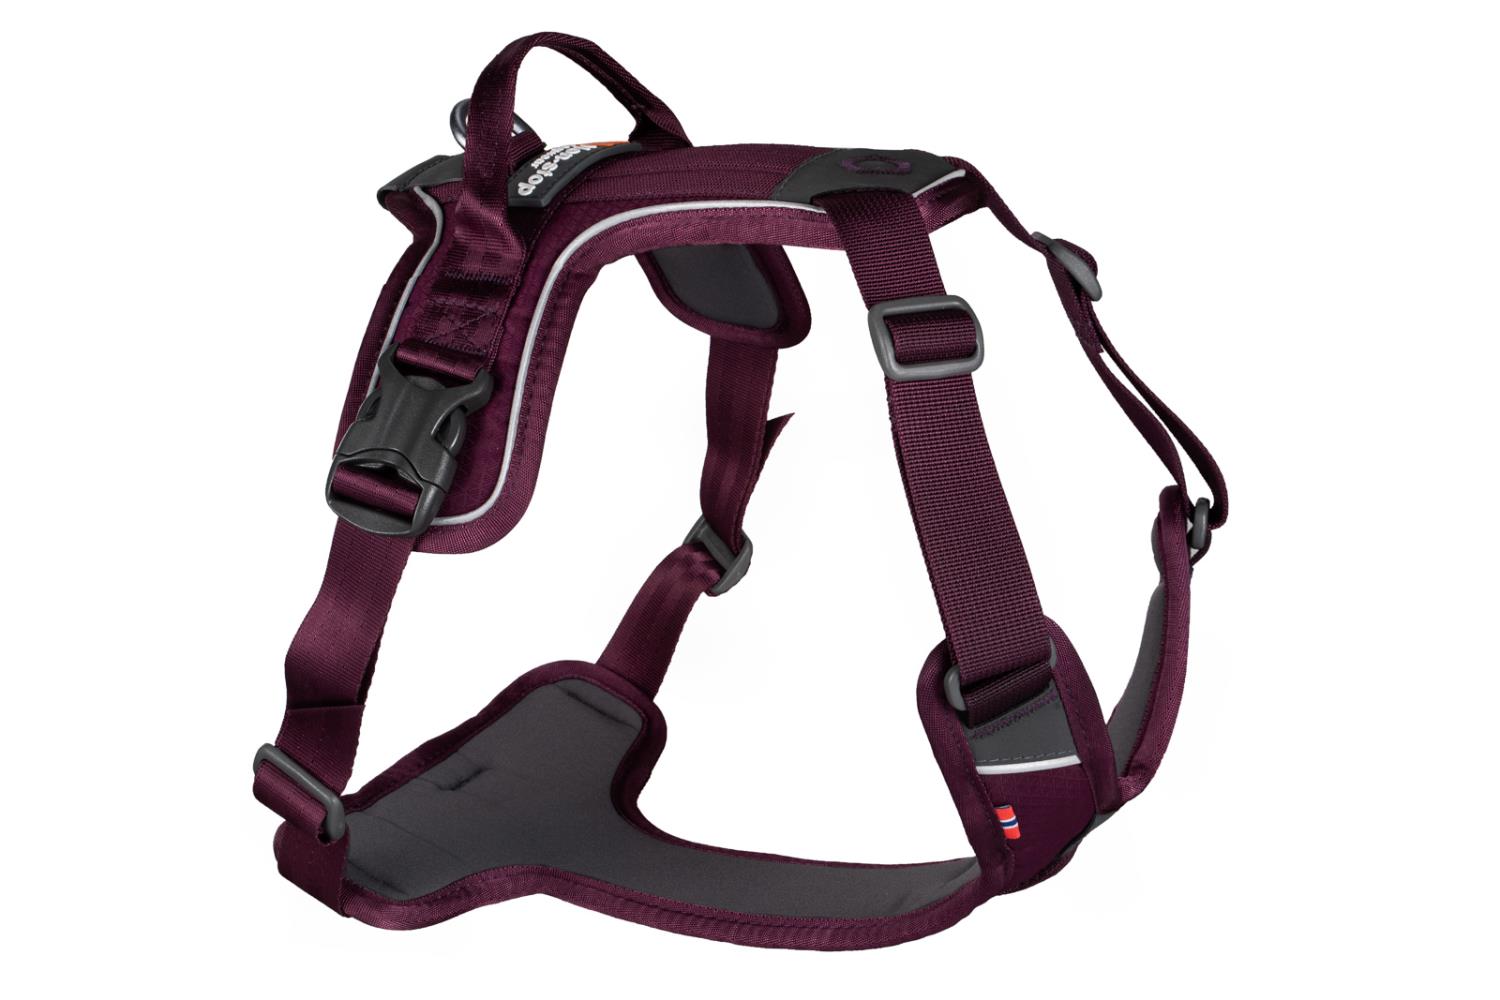 Non-stop Ramble harness, purple XL